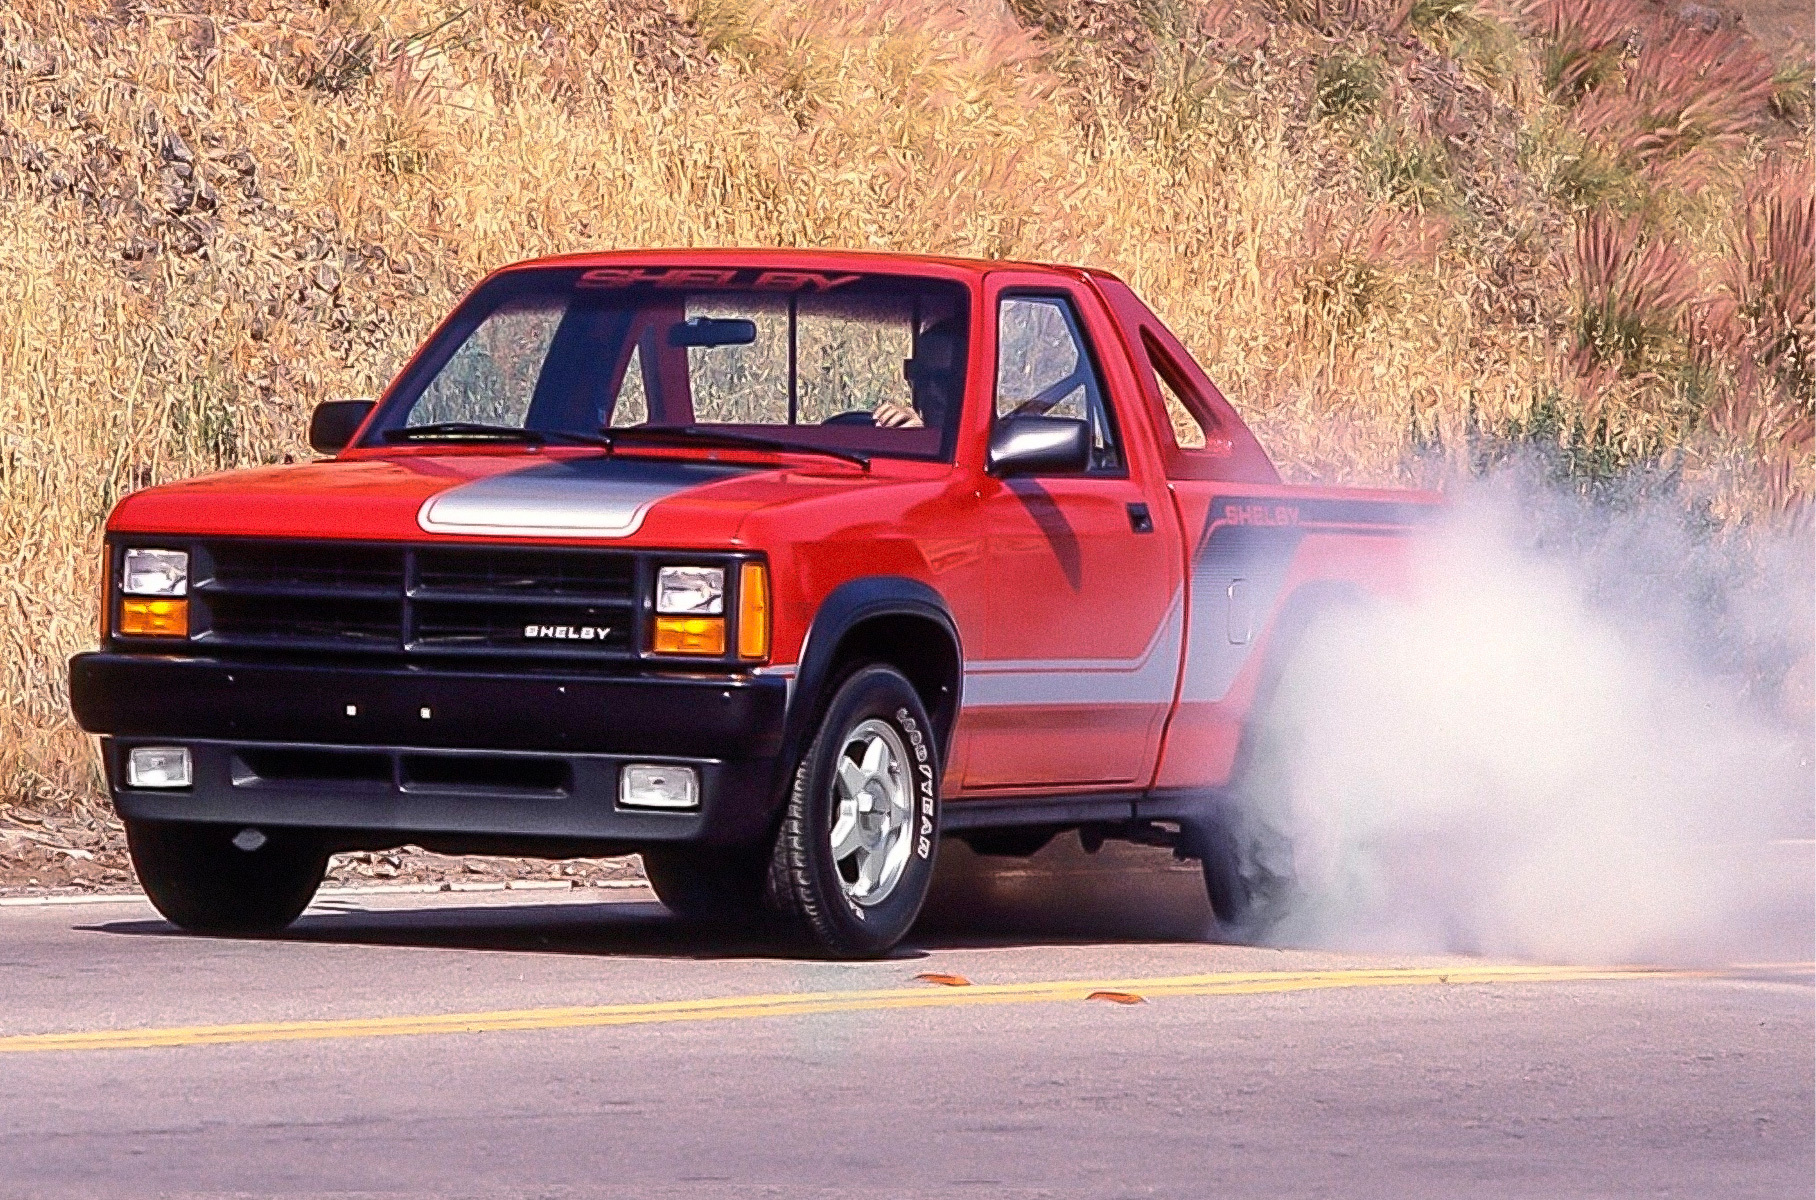 ###  Среднеразмерный пикап Dodge с большими буквами «SHELBY» на кузове… Да, 1980-е были действительно странным временем для великого американского тюнера.